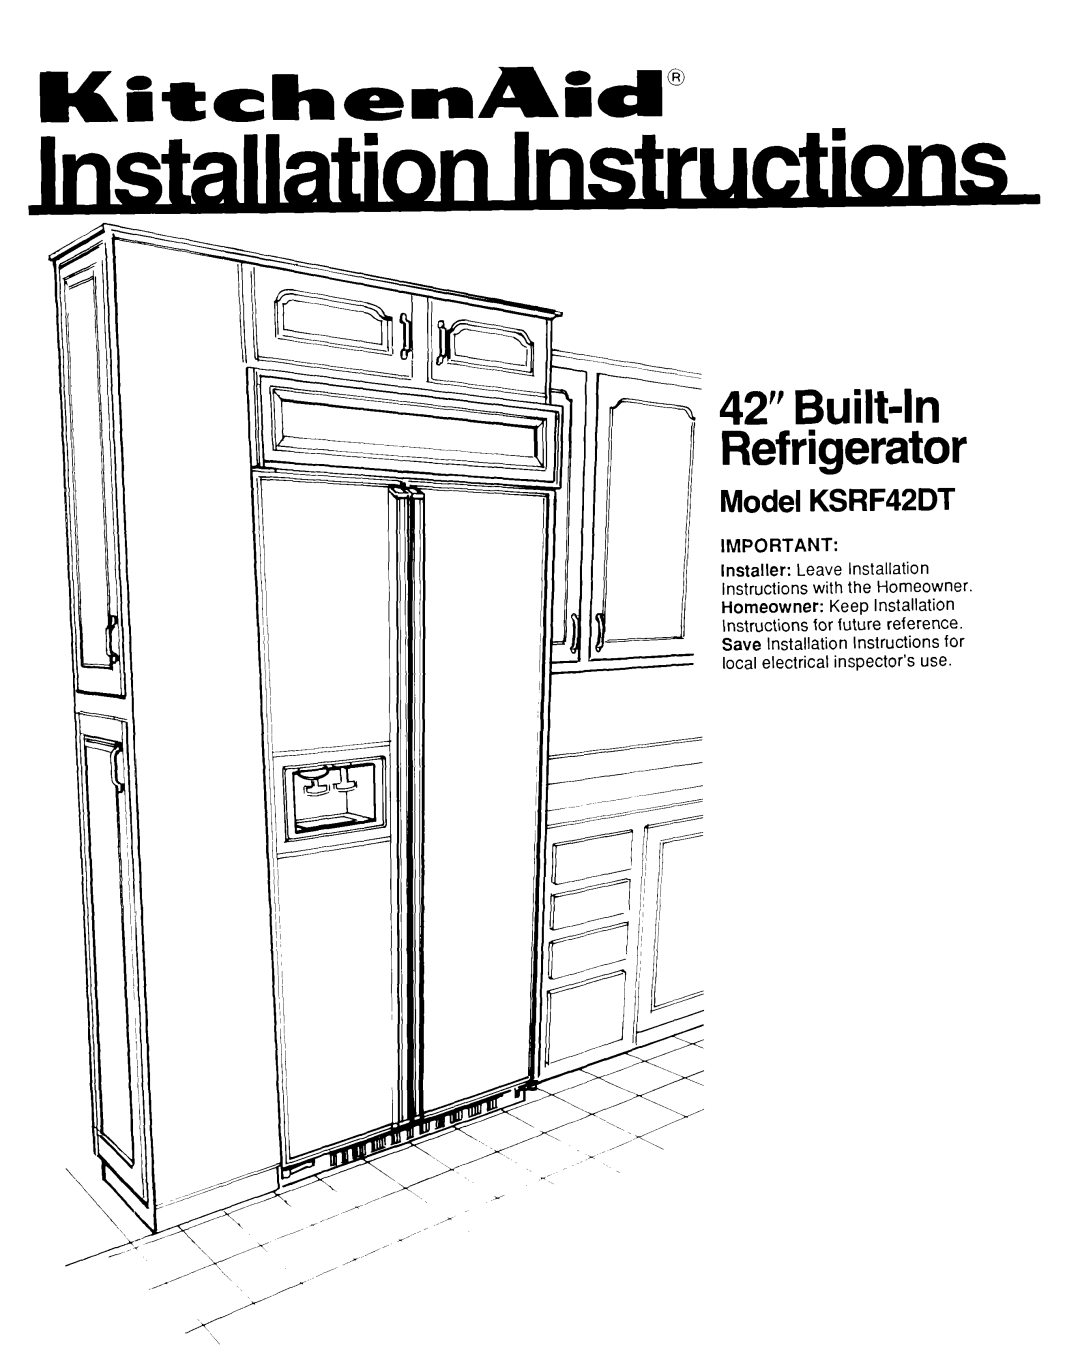 KitchenAid installation instructions Model KSRF42DT, 42” Built-h Refrigerator 